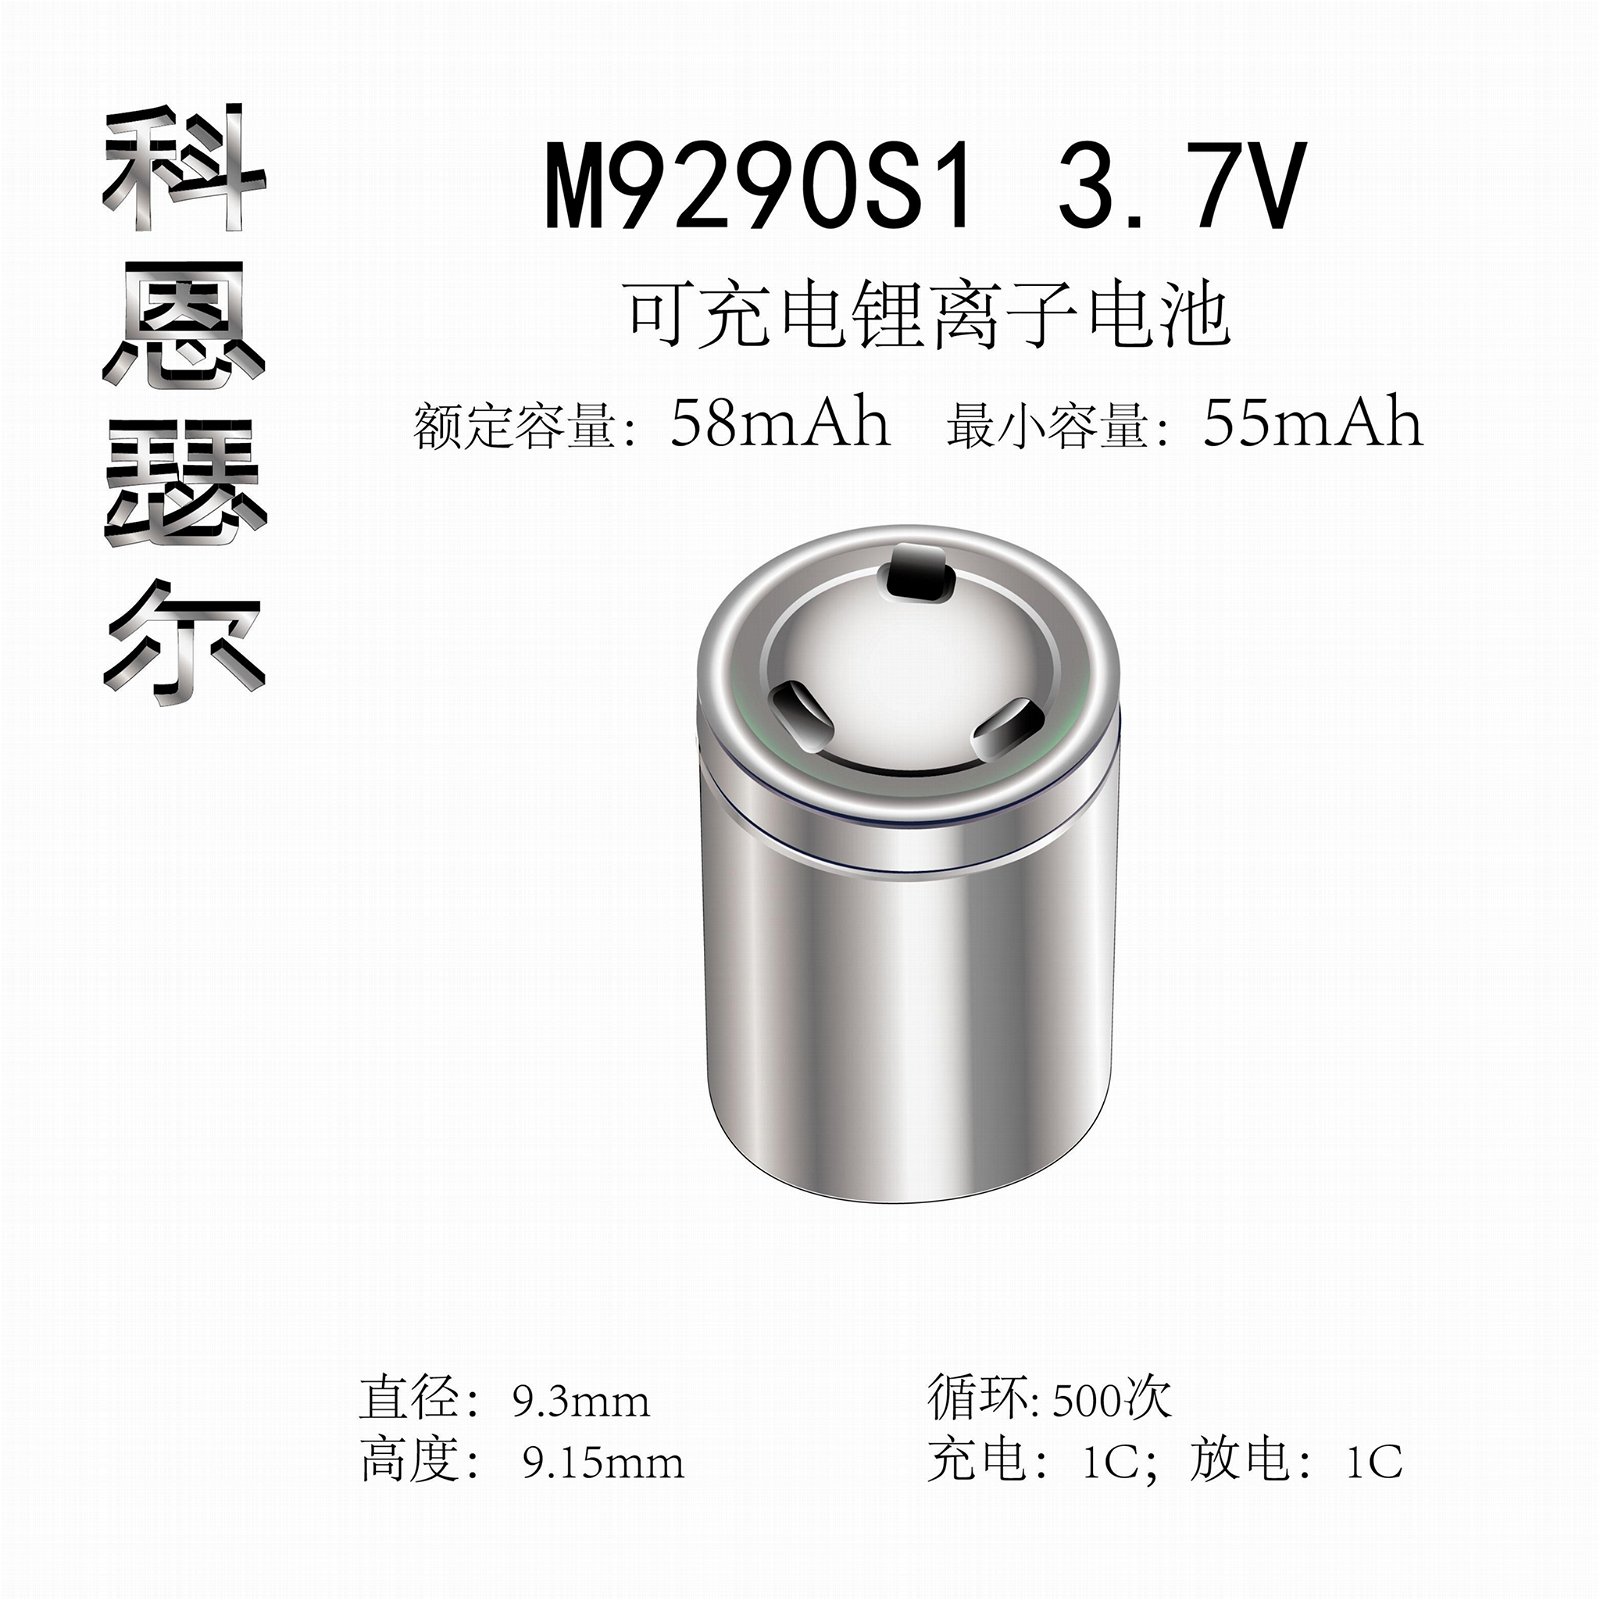 M9290S1 3.7V 58mAh TWS藍牙無線耳機助聽器鋼柱鋰離子電池 4